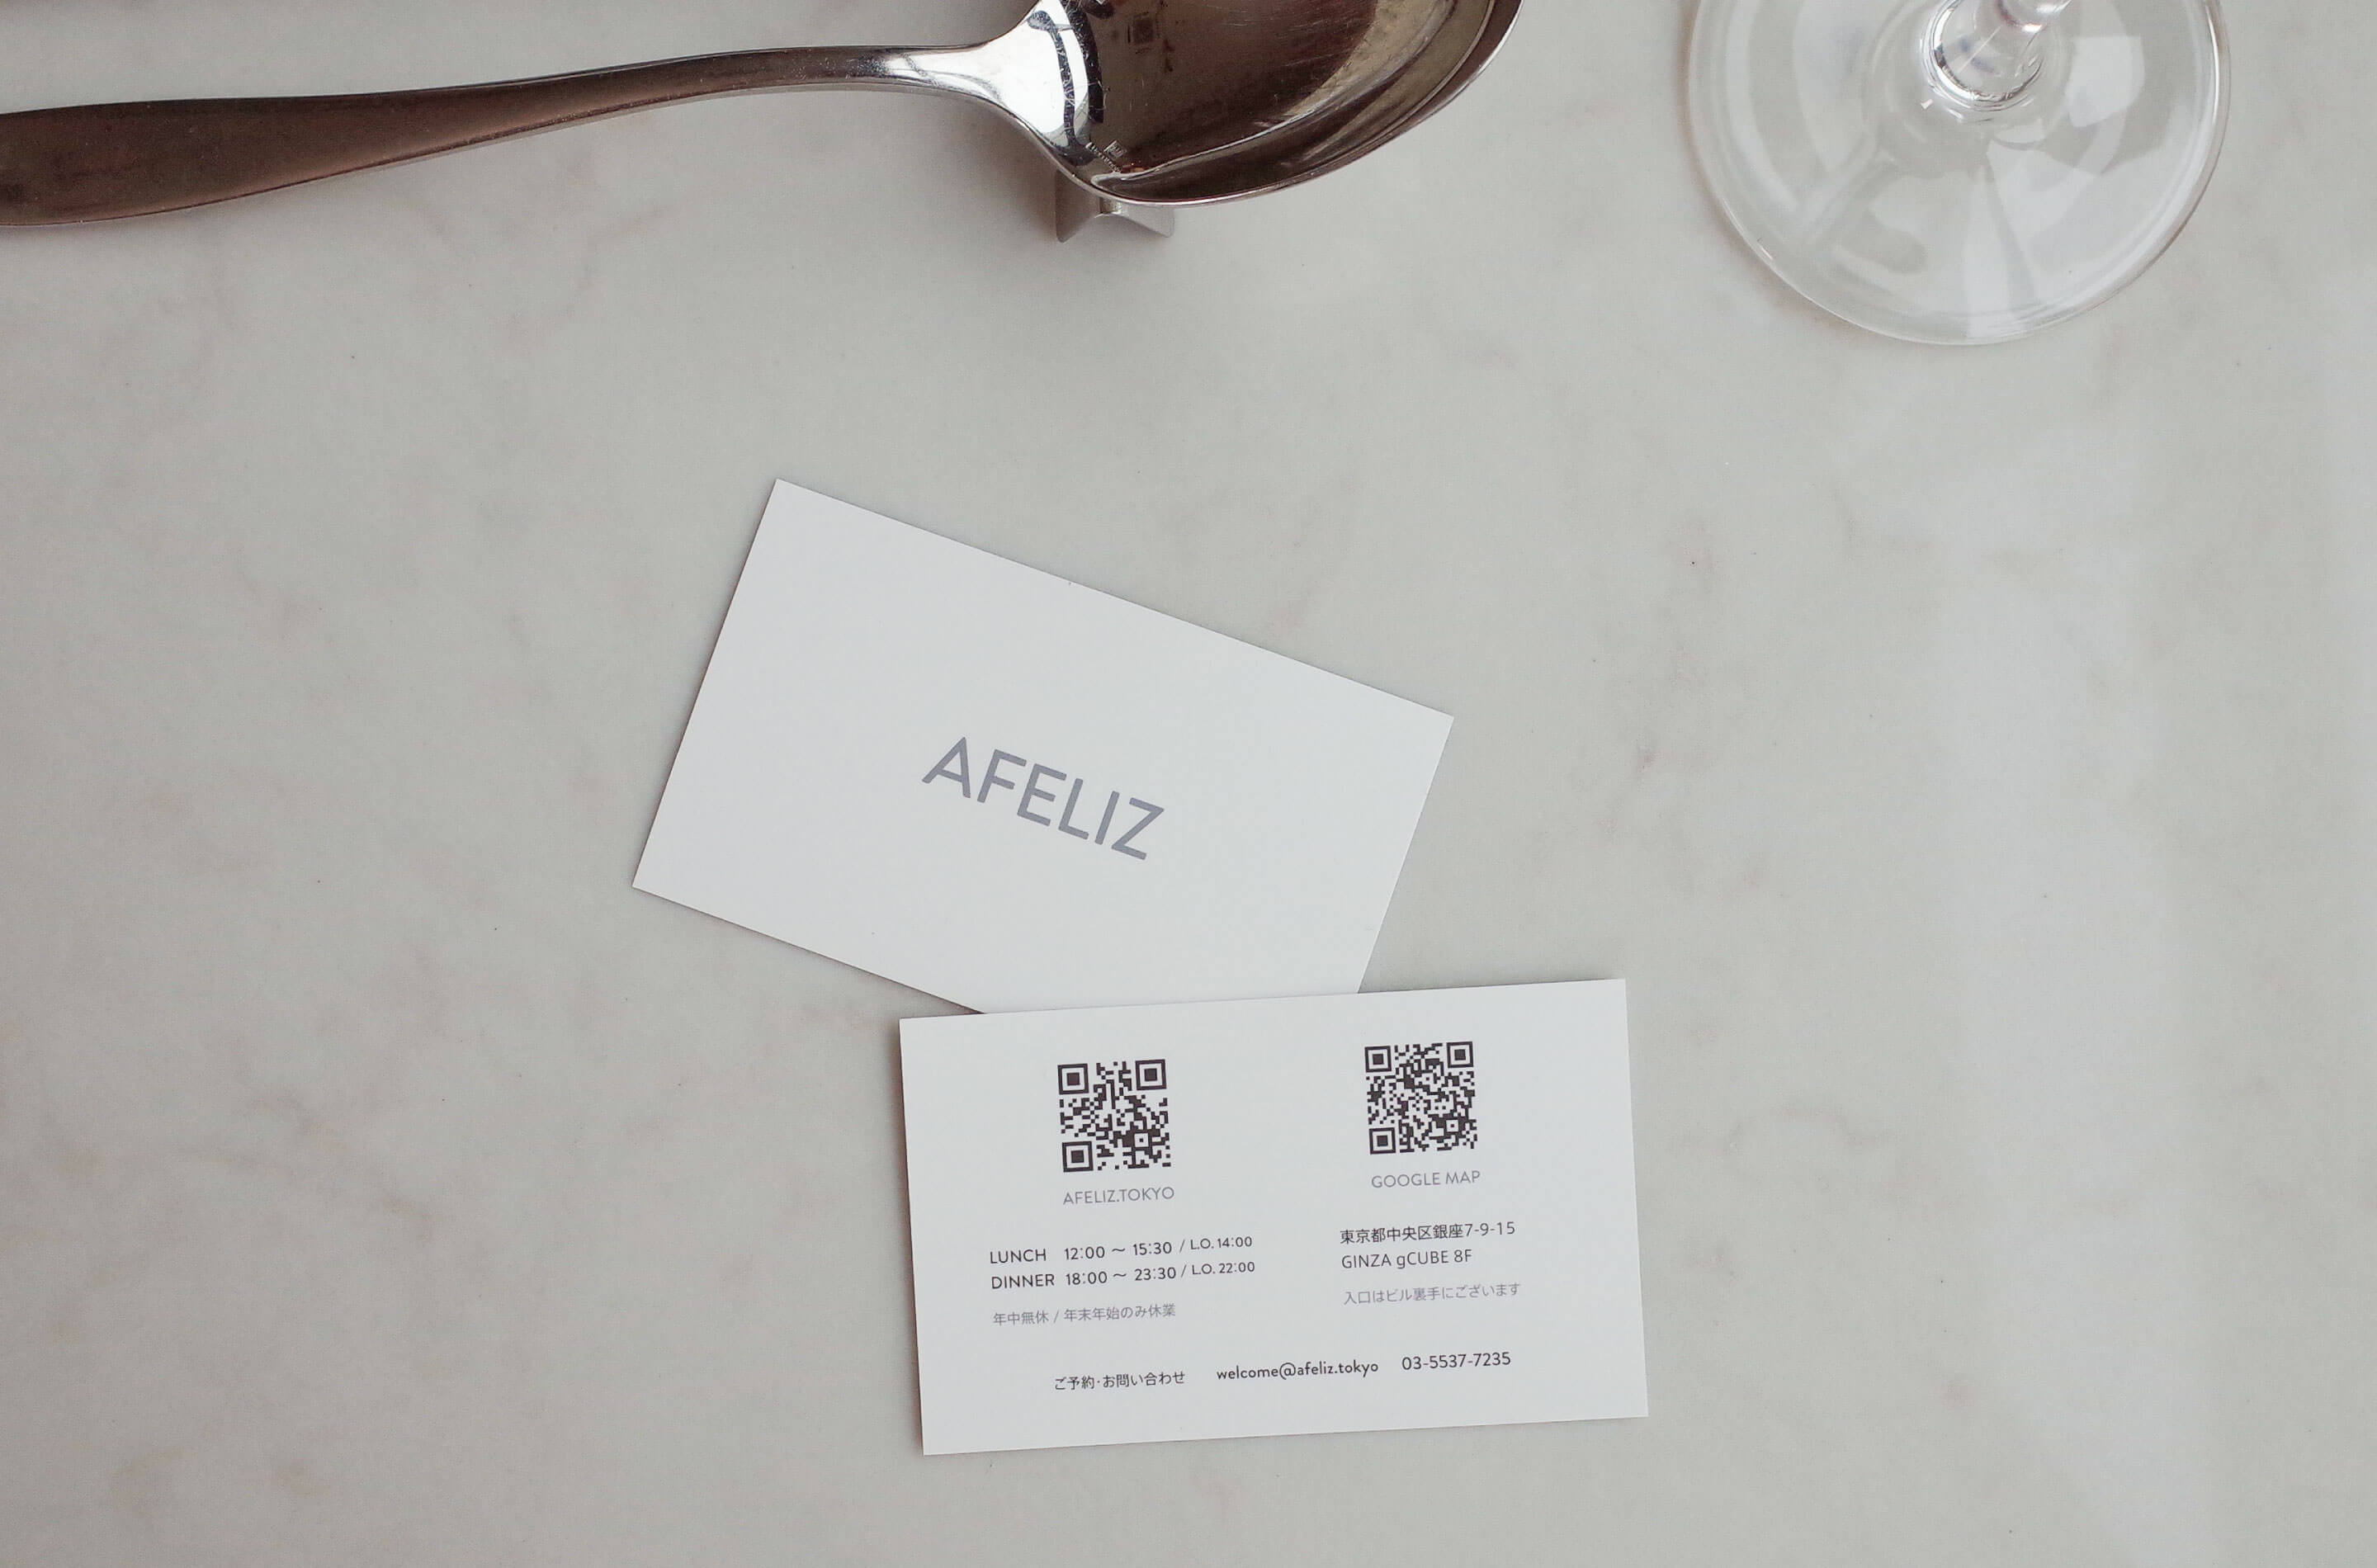 銀座 スペイン料理レストラン「AFELIZ」アートディレクション / Worked as an art director for a Spanish restaurant in Ginza, Tokyo “AFELIZ”